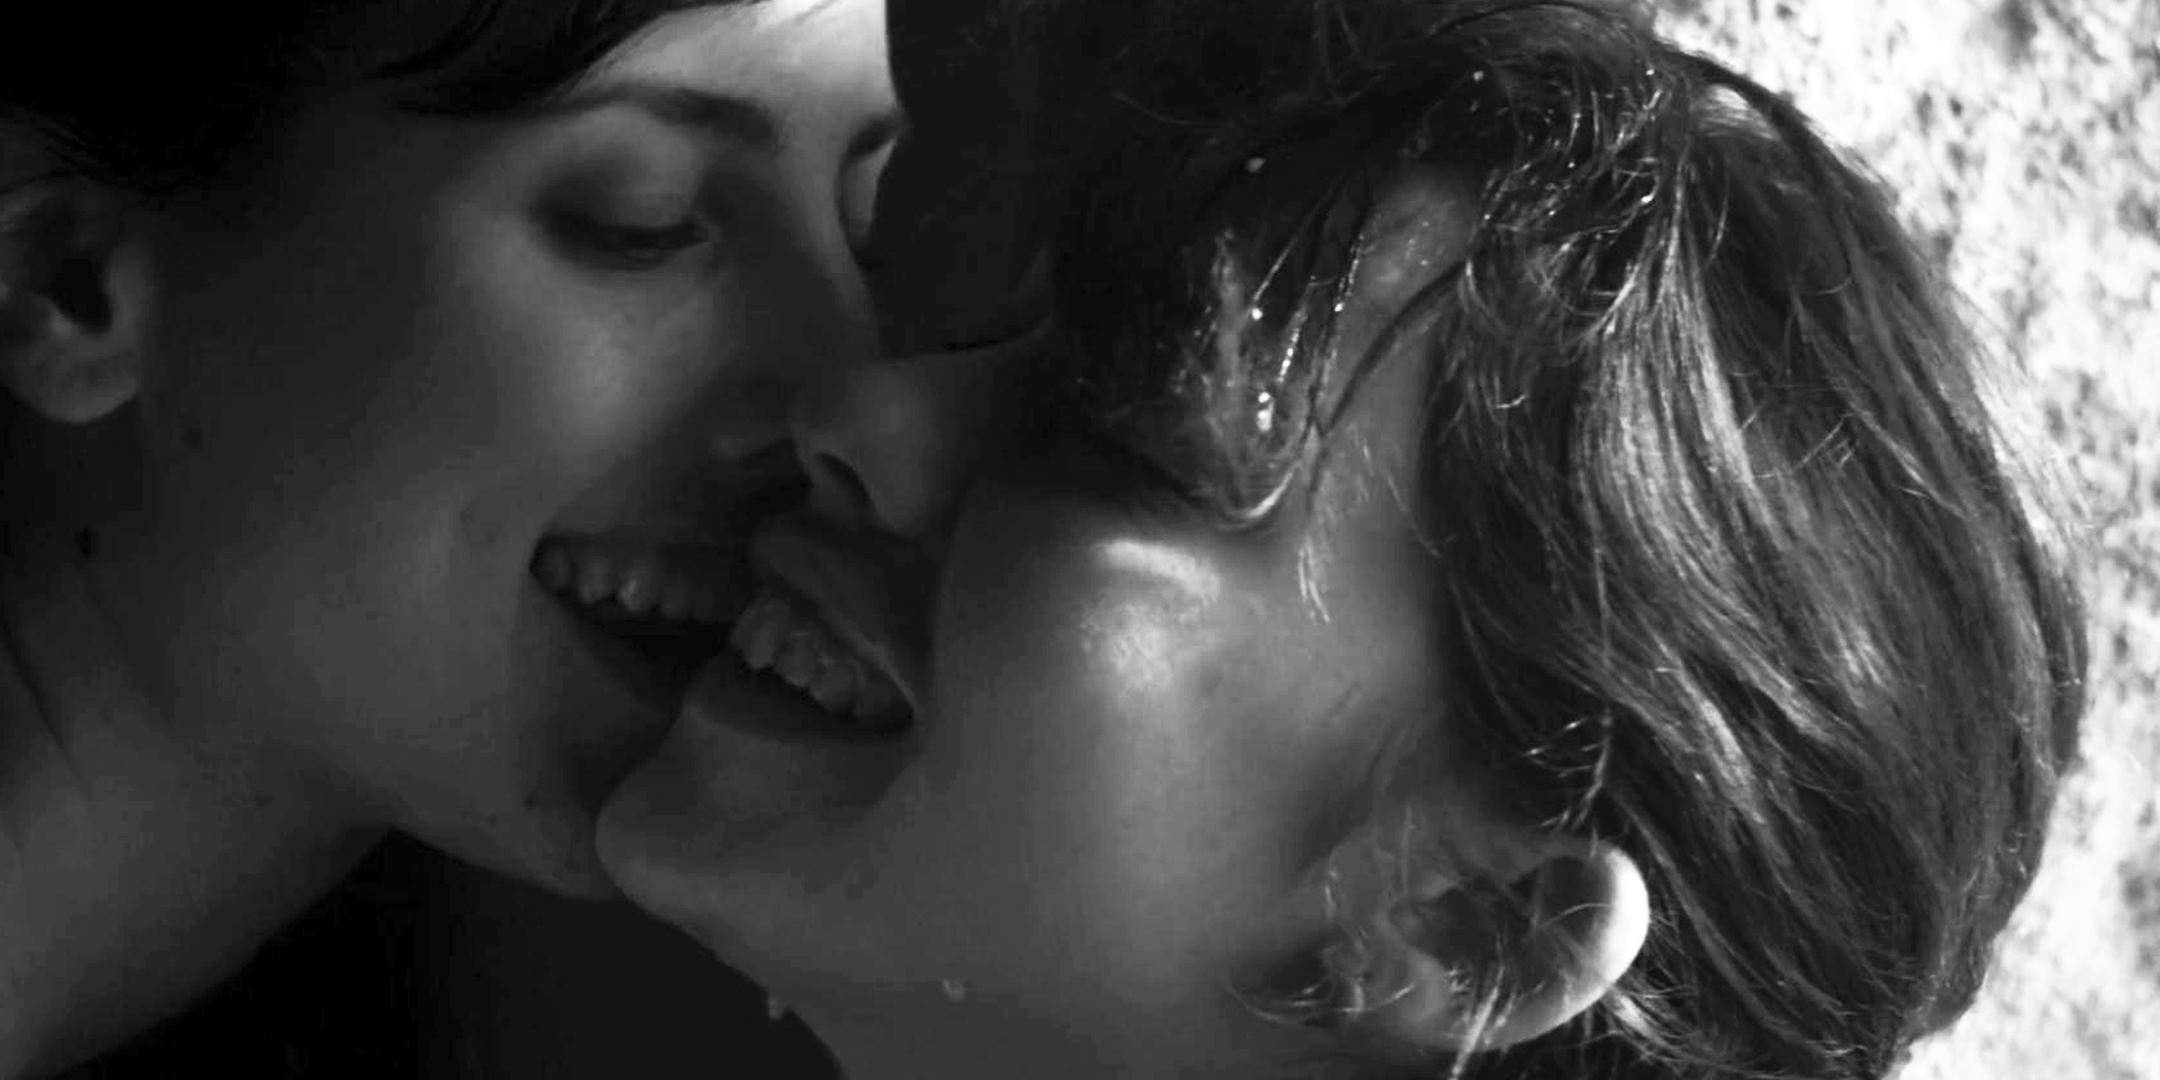 Romantic Sus Pence Sex Videos - The 42 Best Romantic Movie Sex Scenes